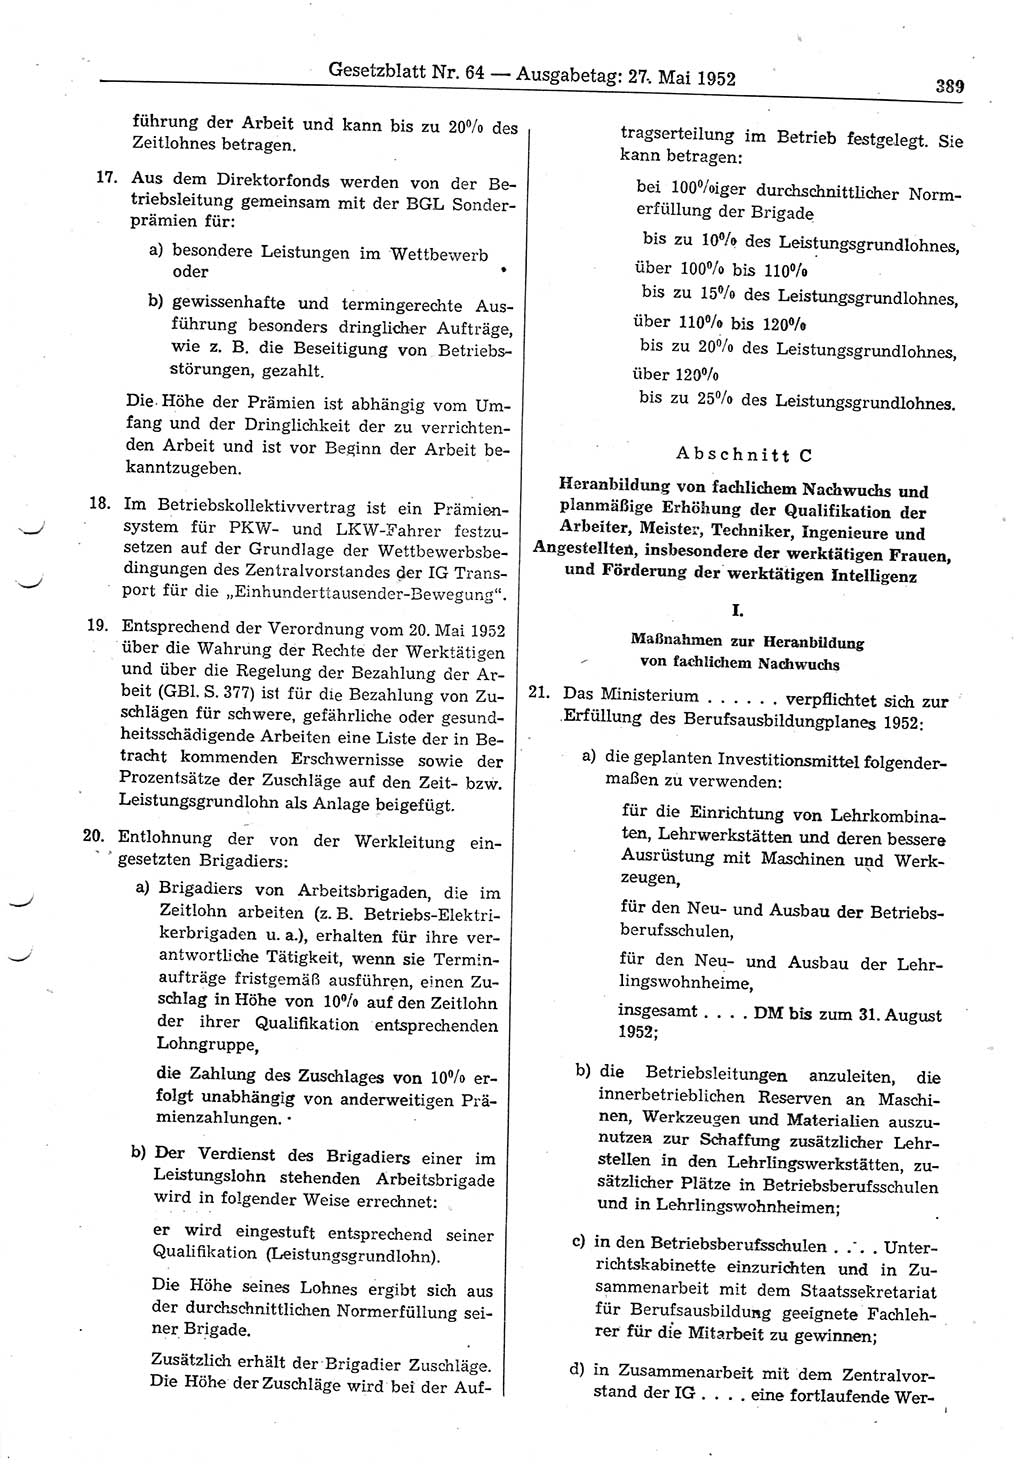 Gesetzblatt (GBl.) der Deutschen Demokratischen Republik (DDR) 1952, Seite 389 (GBl. DDR 1952, S. 389)